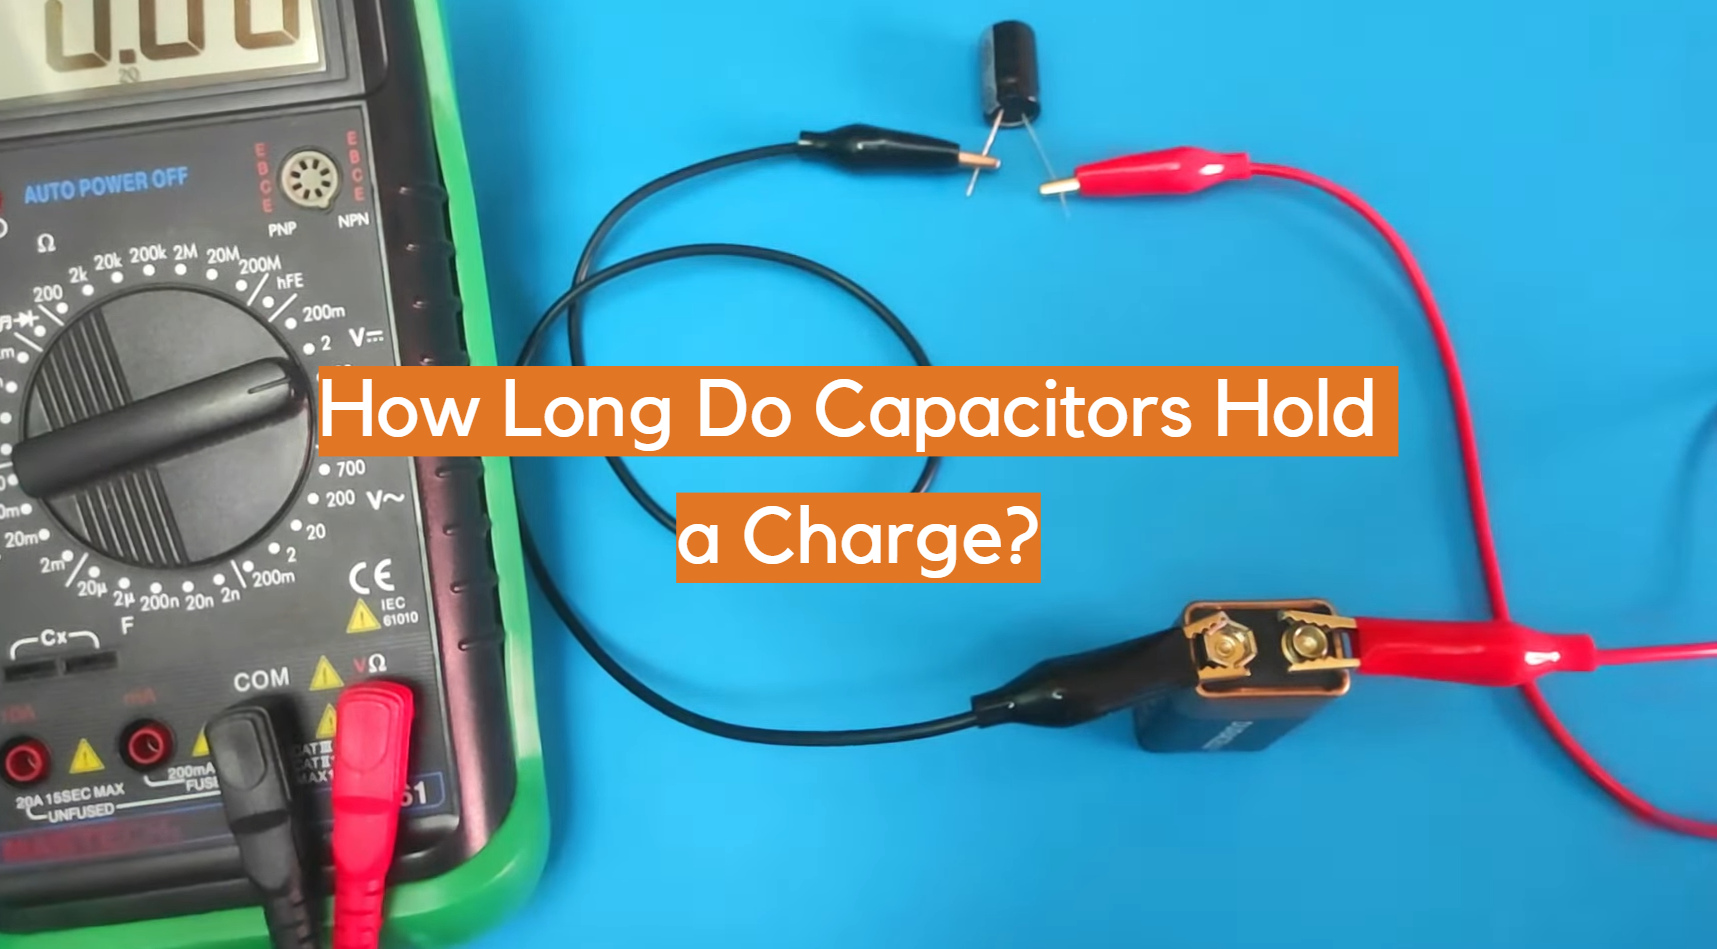 ¿Cuánto tiempo mantienen una carga los capacitores?